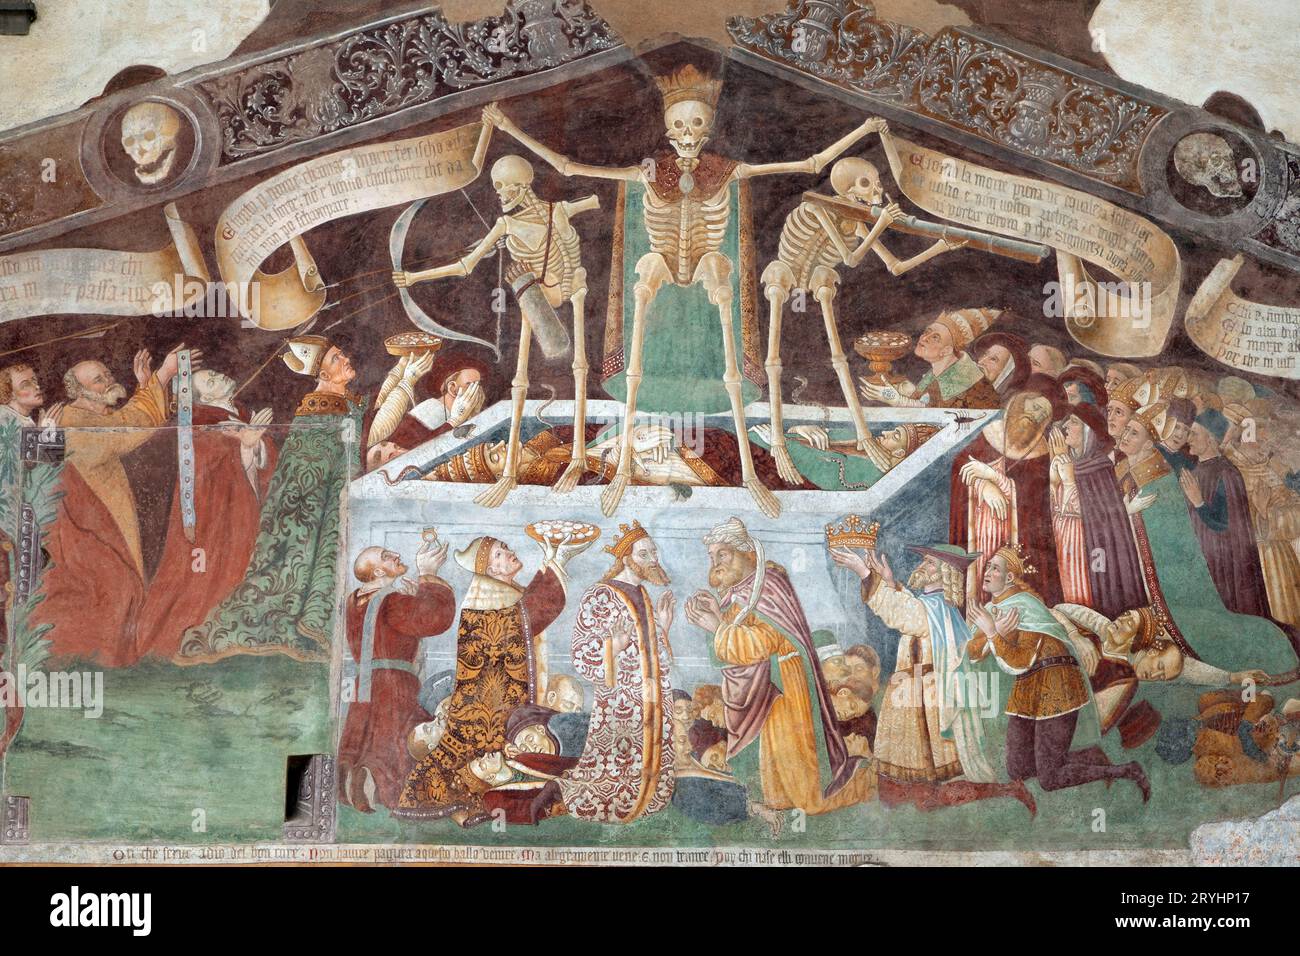 Le triomphe de la mort, fresque médiévale à Clusone, Italie Banque D'Images